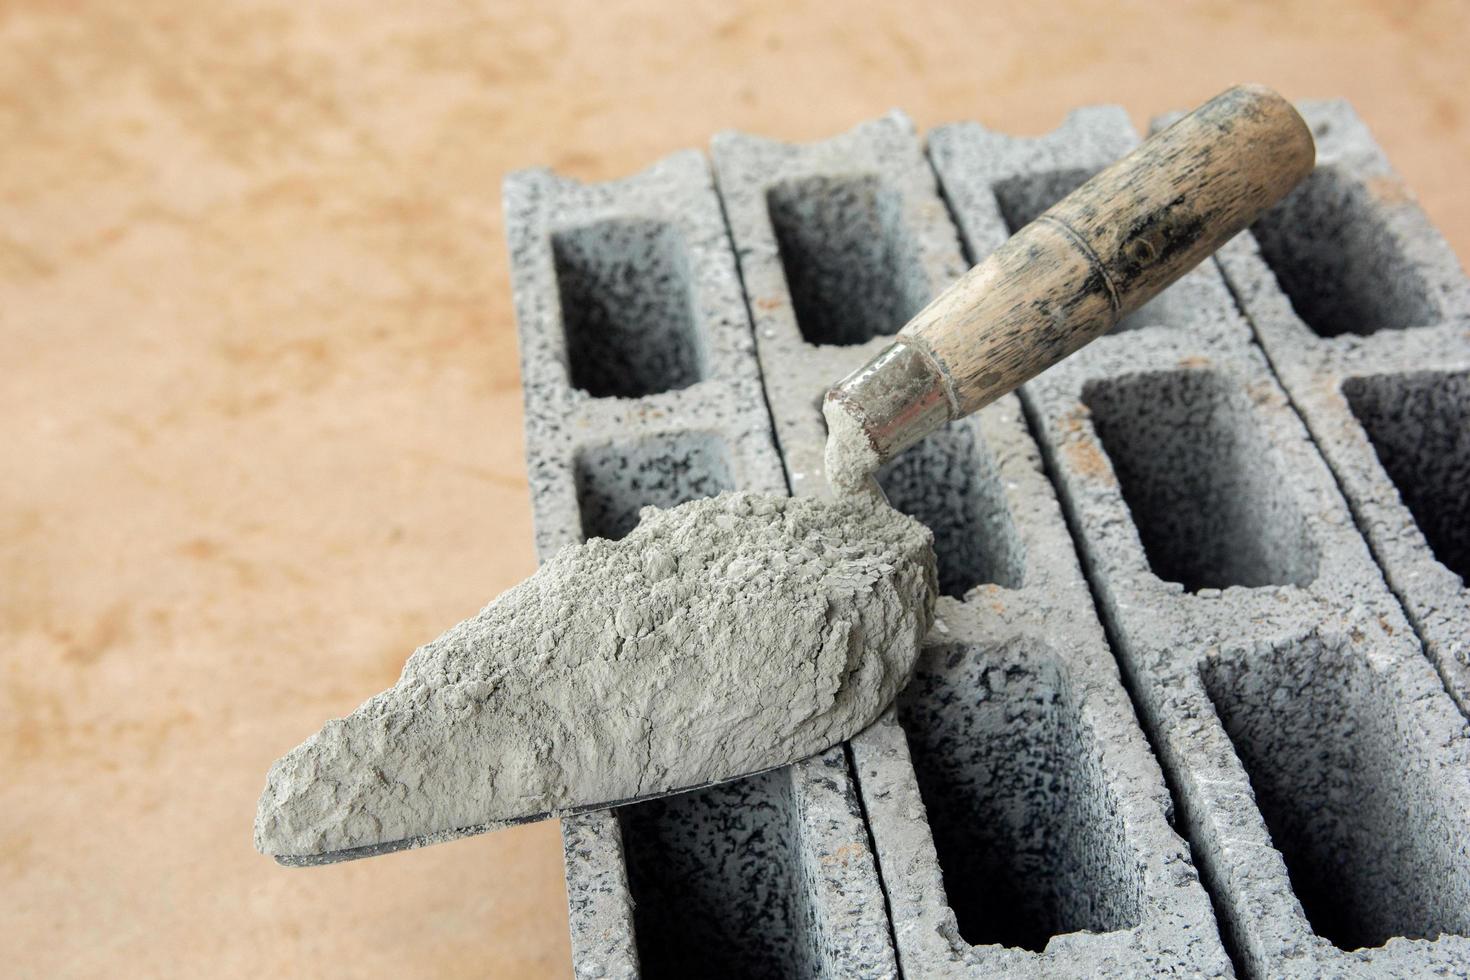 cementpulver eller murbruk med murslev läggs på betongstenen för byggnadsarbete. foto